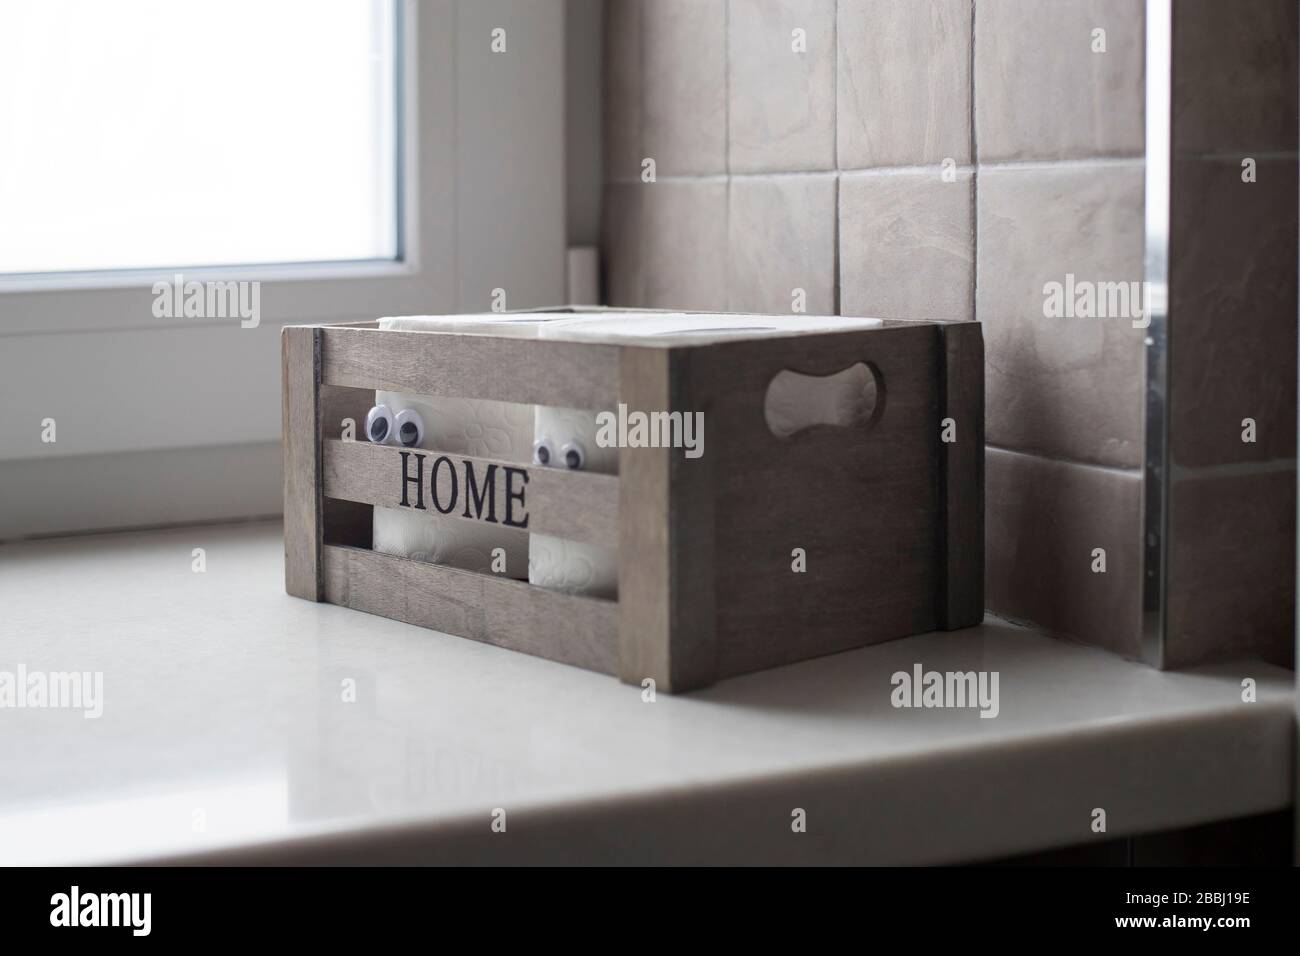 Deux rouleaux de papier toilette avec yeux artificiels dans une boîte en bois avec l'inscription Home sur la salle de bains grise bleue près de la fenêtre Banque D'Images